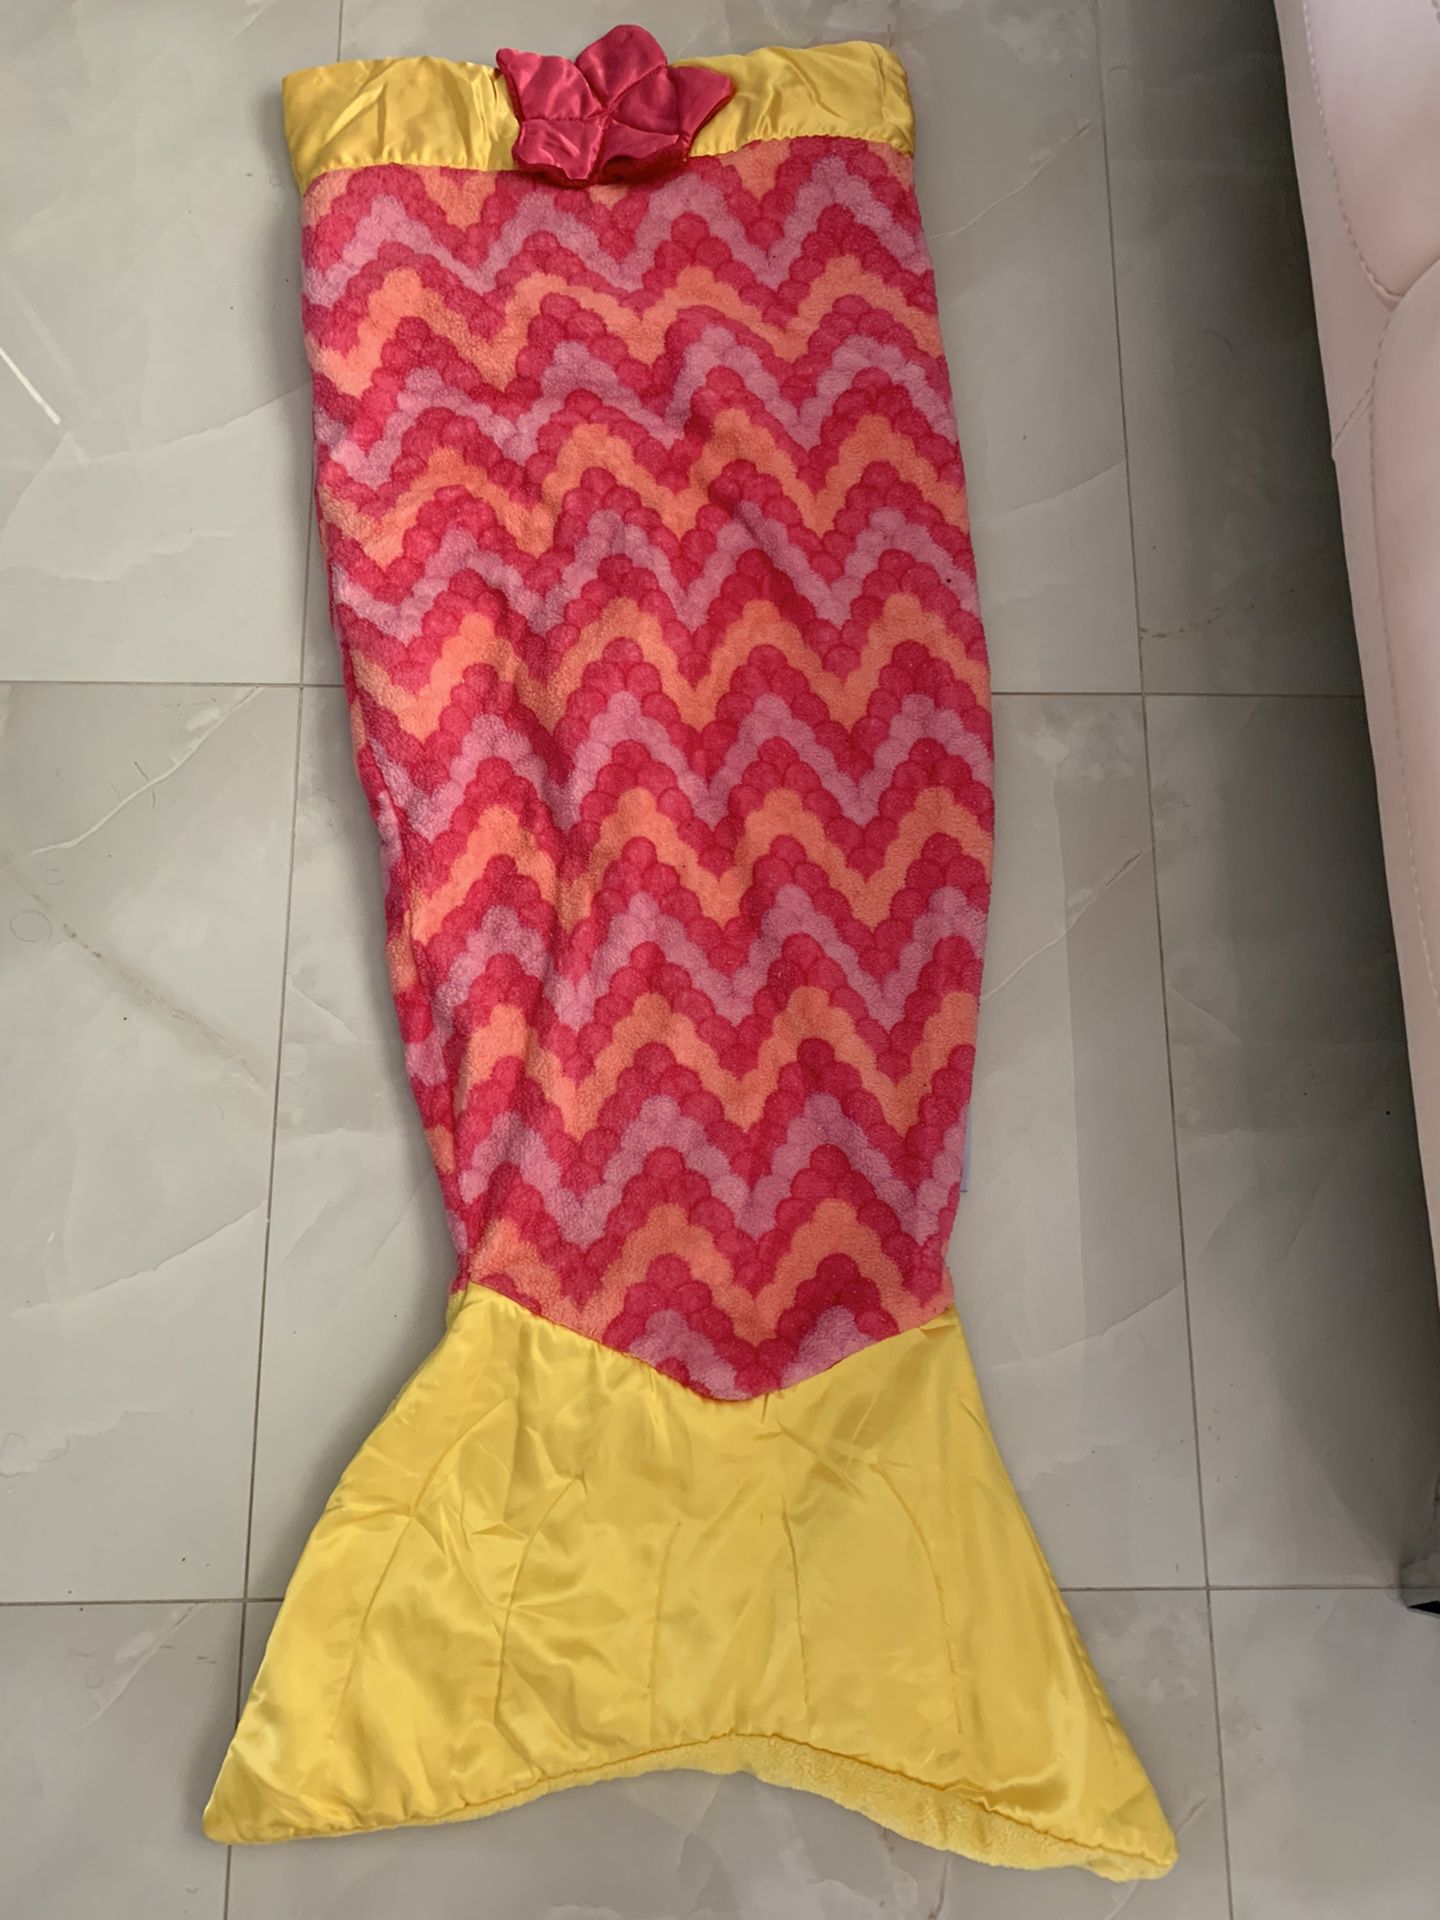 Snuggie Mermaid tail blanket .